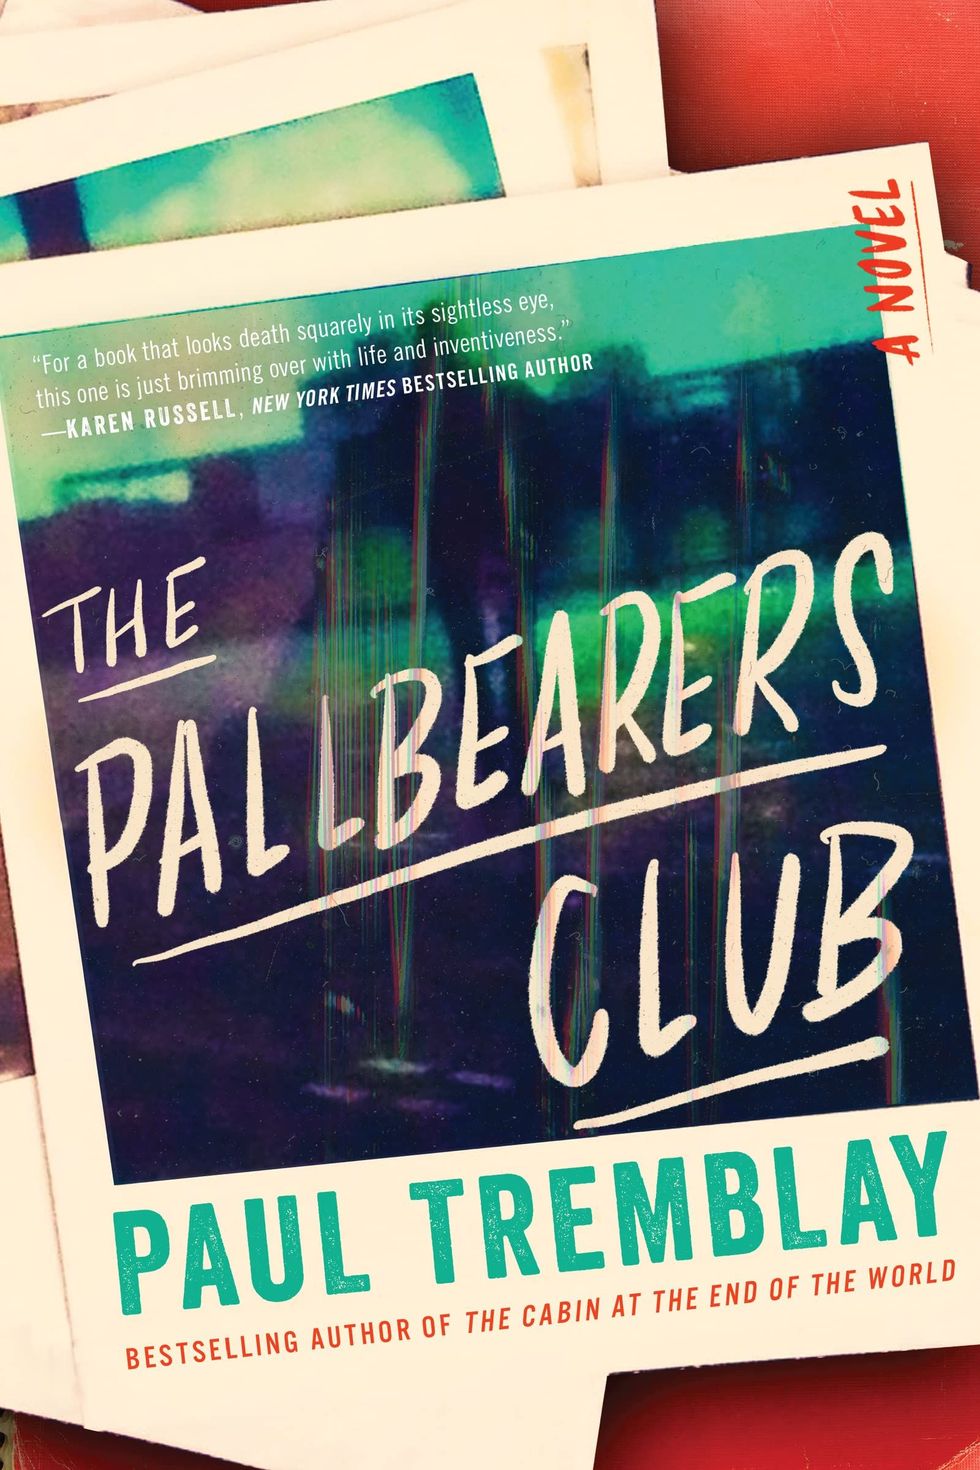 <i>The Pallbearers Club</i> by Paul Tremblay